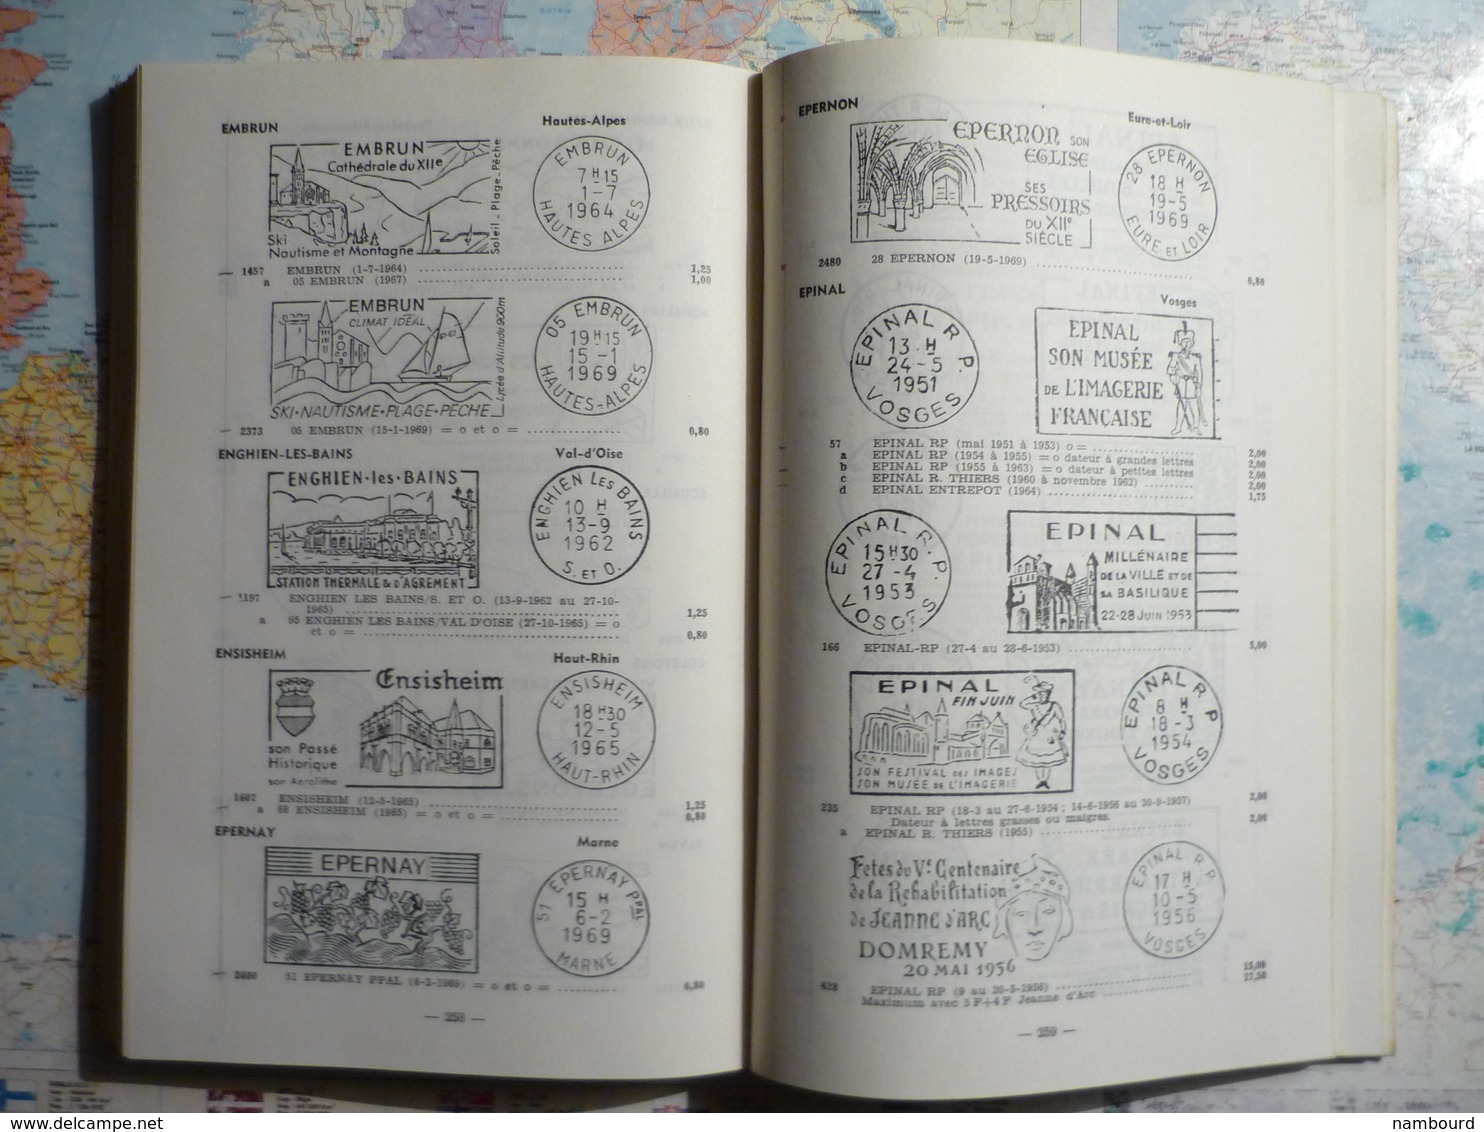 Catalogue des oblitérations mécaniques  à flamme illustrée ou stylisée 3-e édition 1971 Tomes I et II